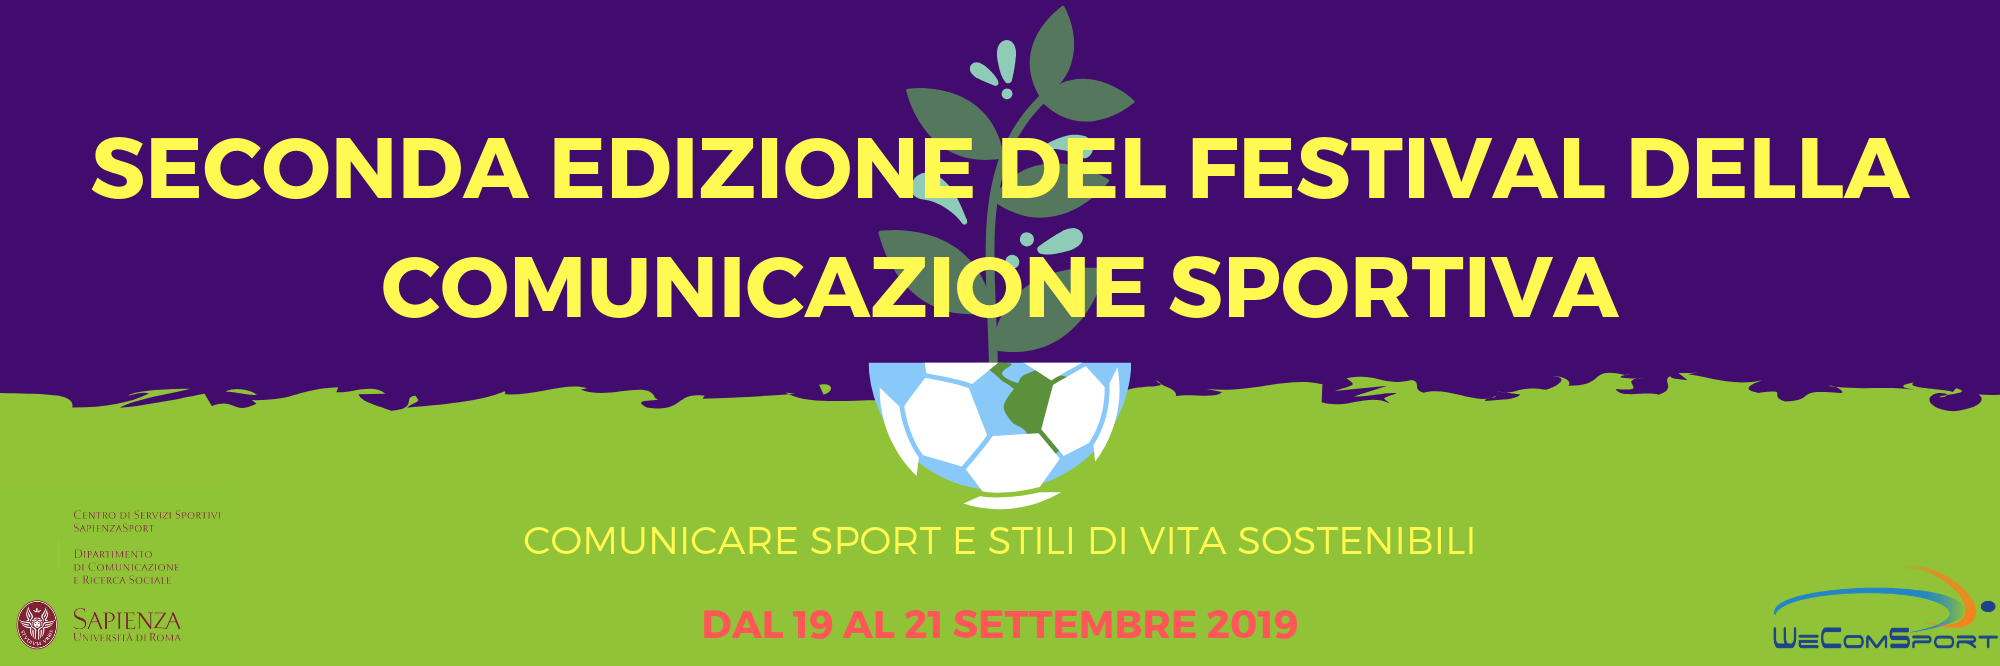 Seconda edizione del Festival della Comunicazione Sportiva